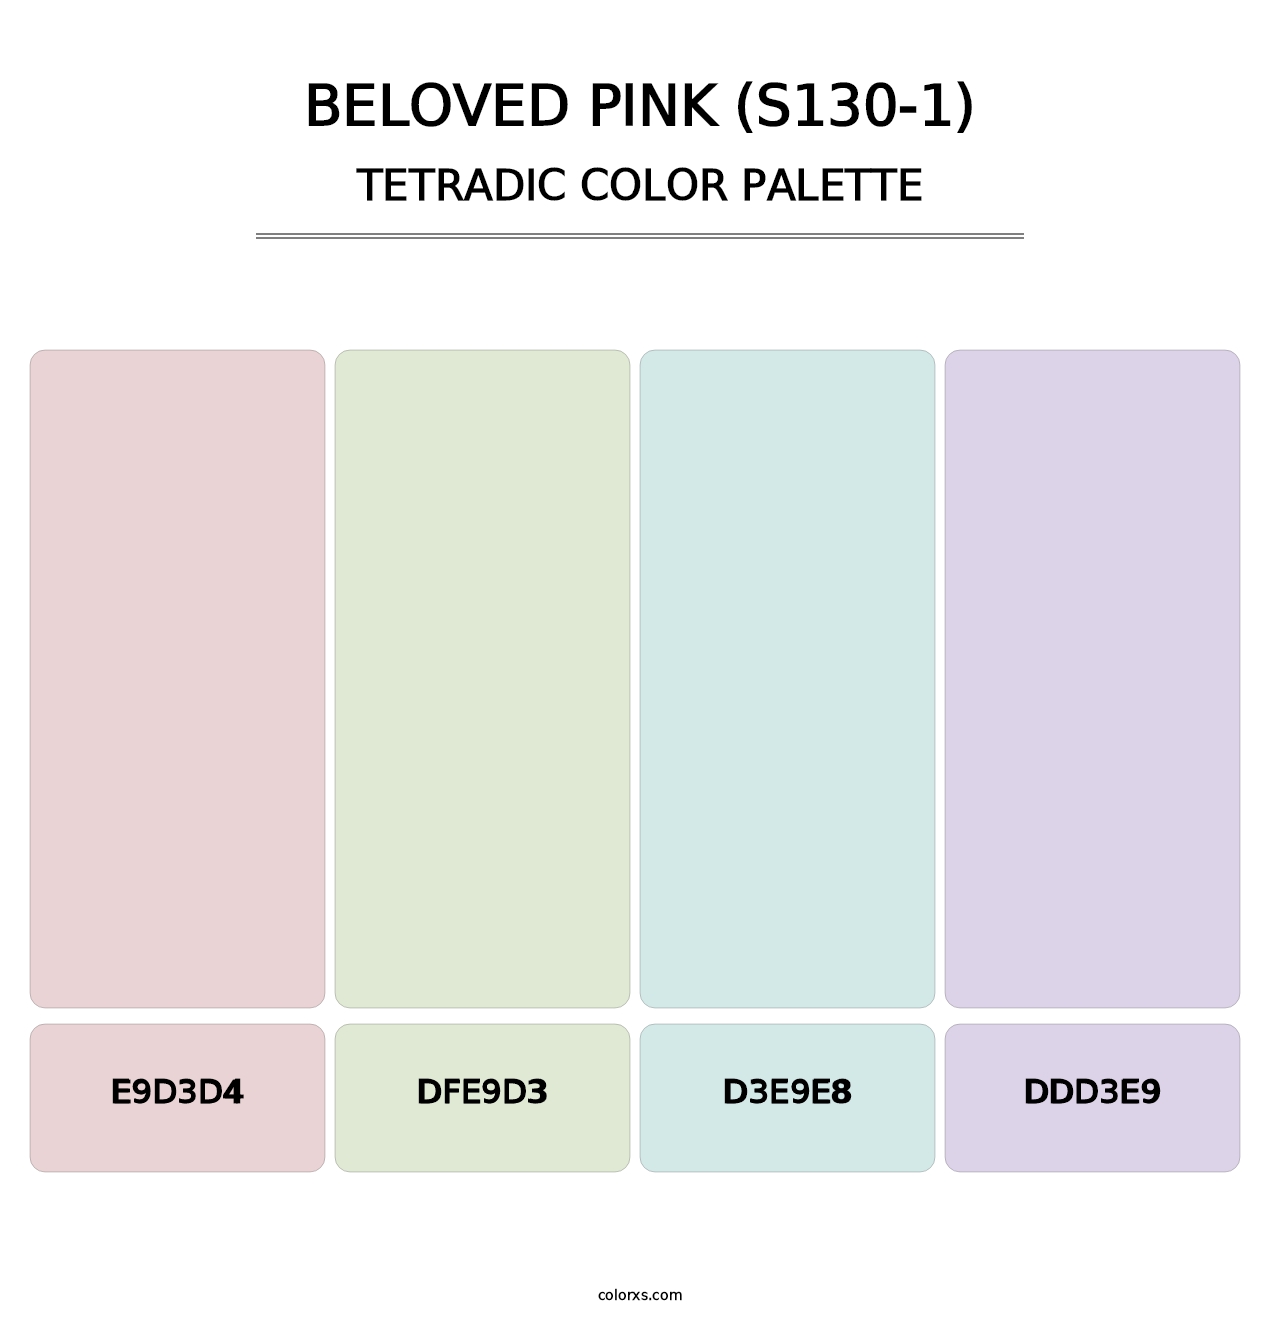 Beloved Pink (S130-1) - Tetradic Color Palette